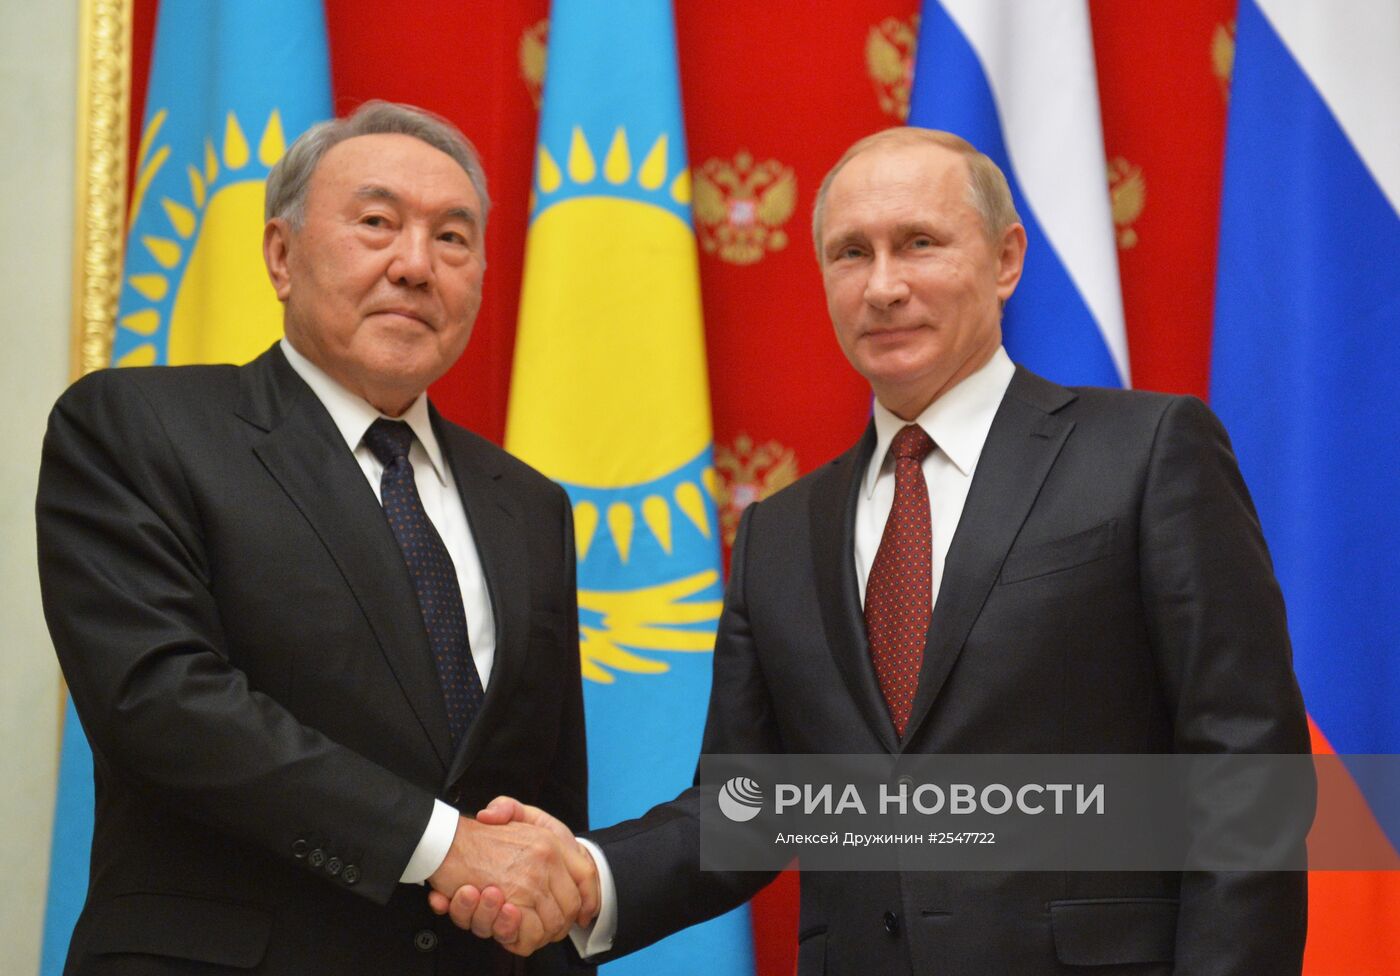 В.Путин встретился с Н.Назарбаевым